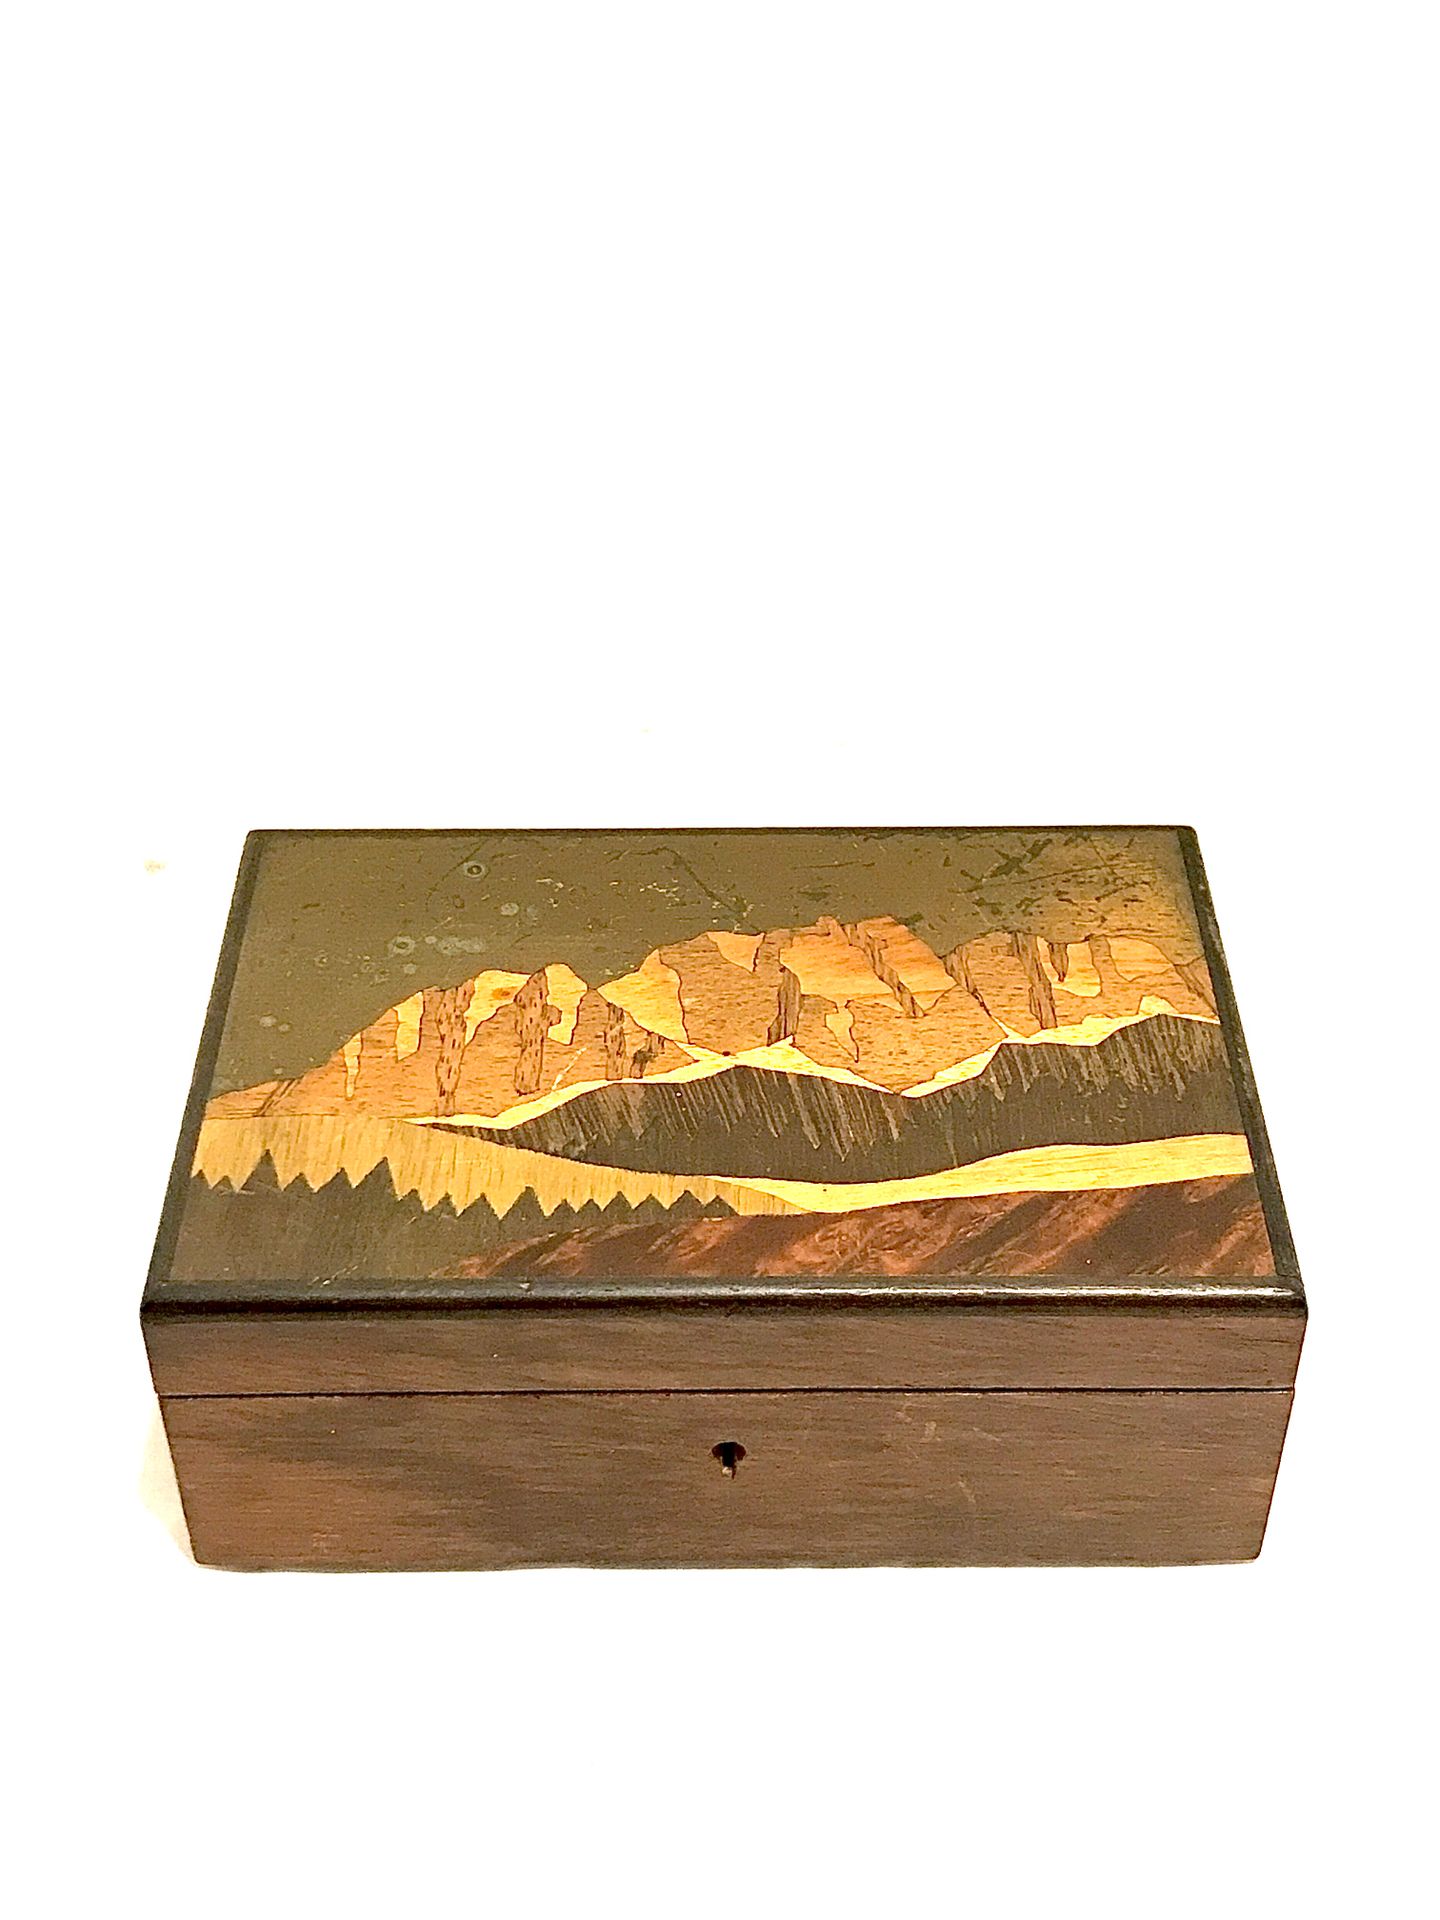 Null 紫檀木贴面的盒子，盖子上的镶嵌图案形成了一个山景。高6厘米。长15厘米。宽度为10厘米。